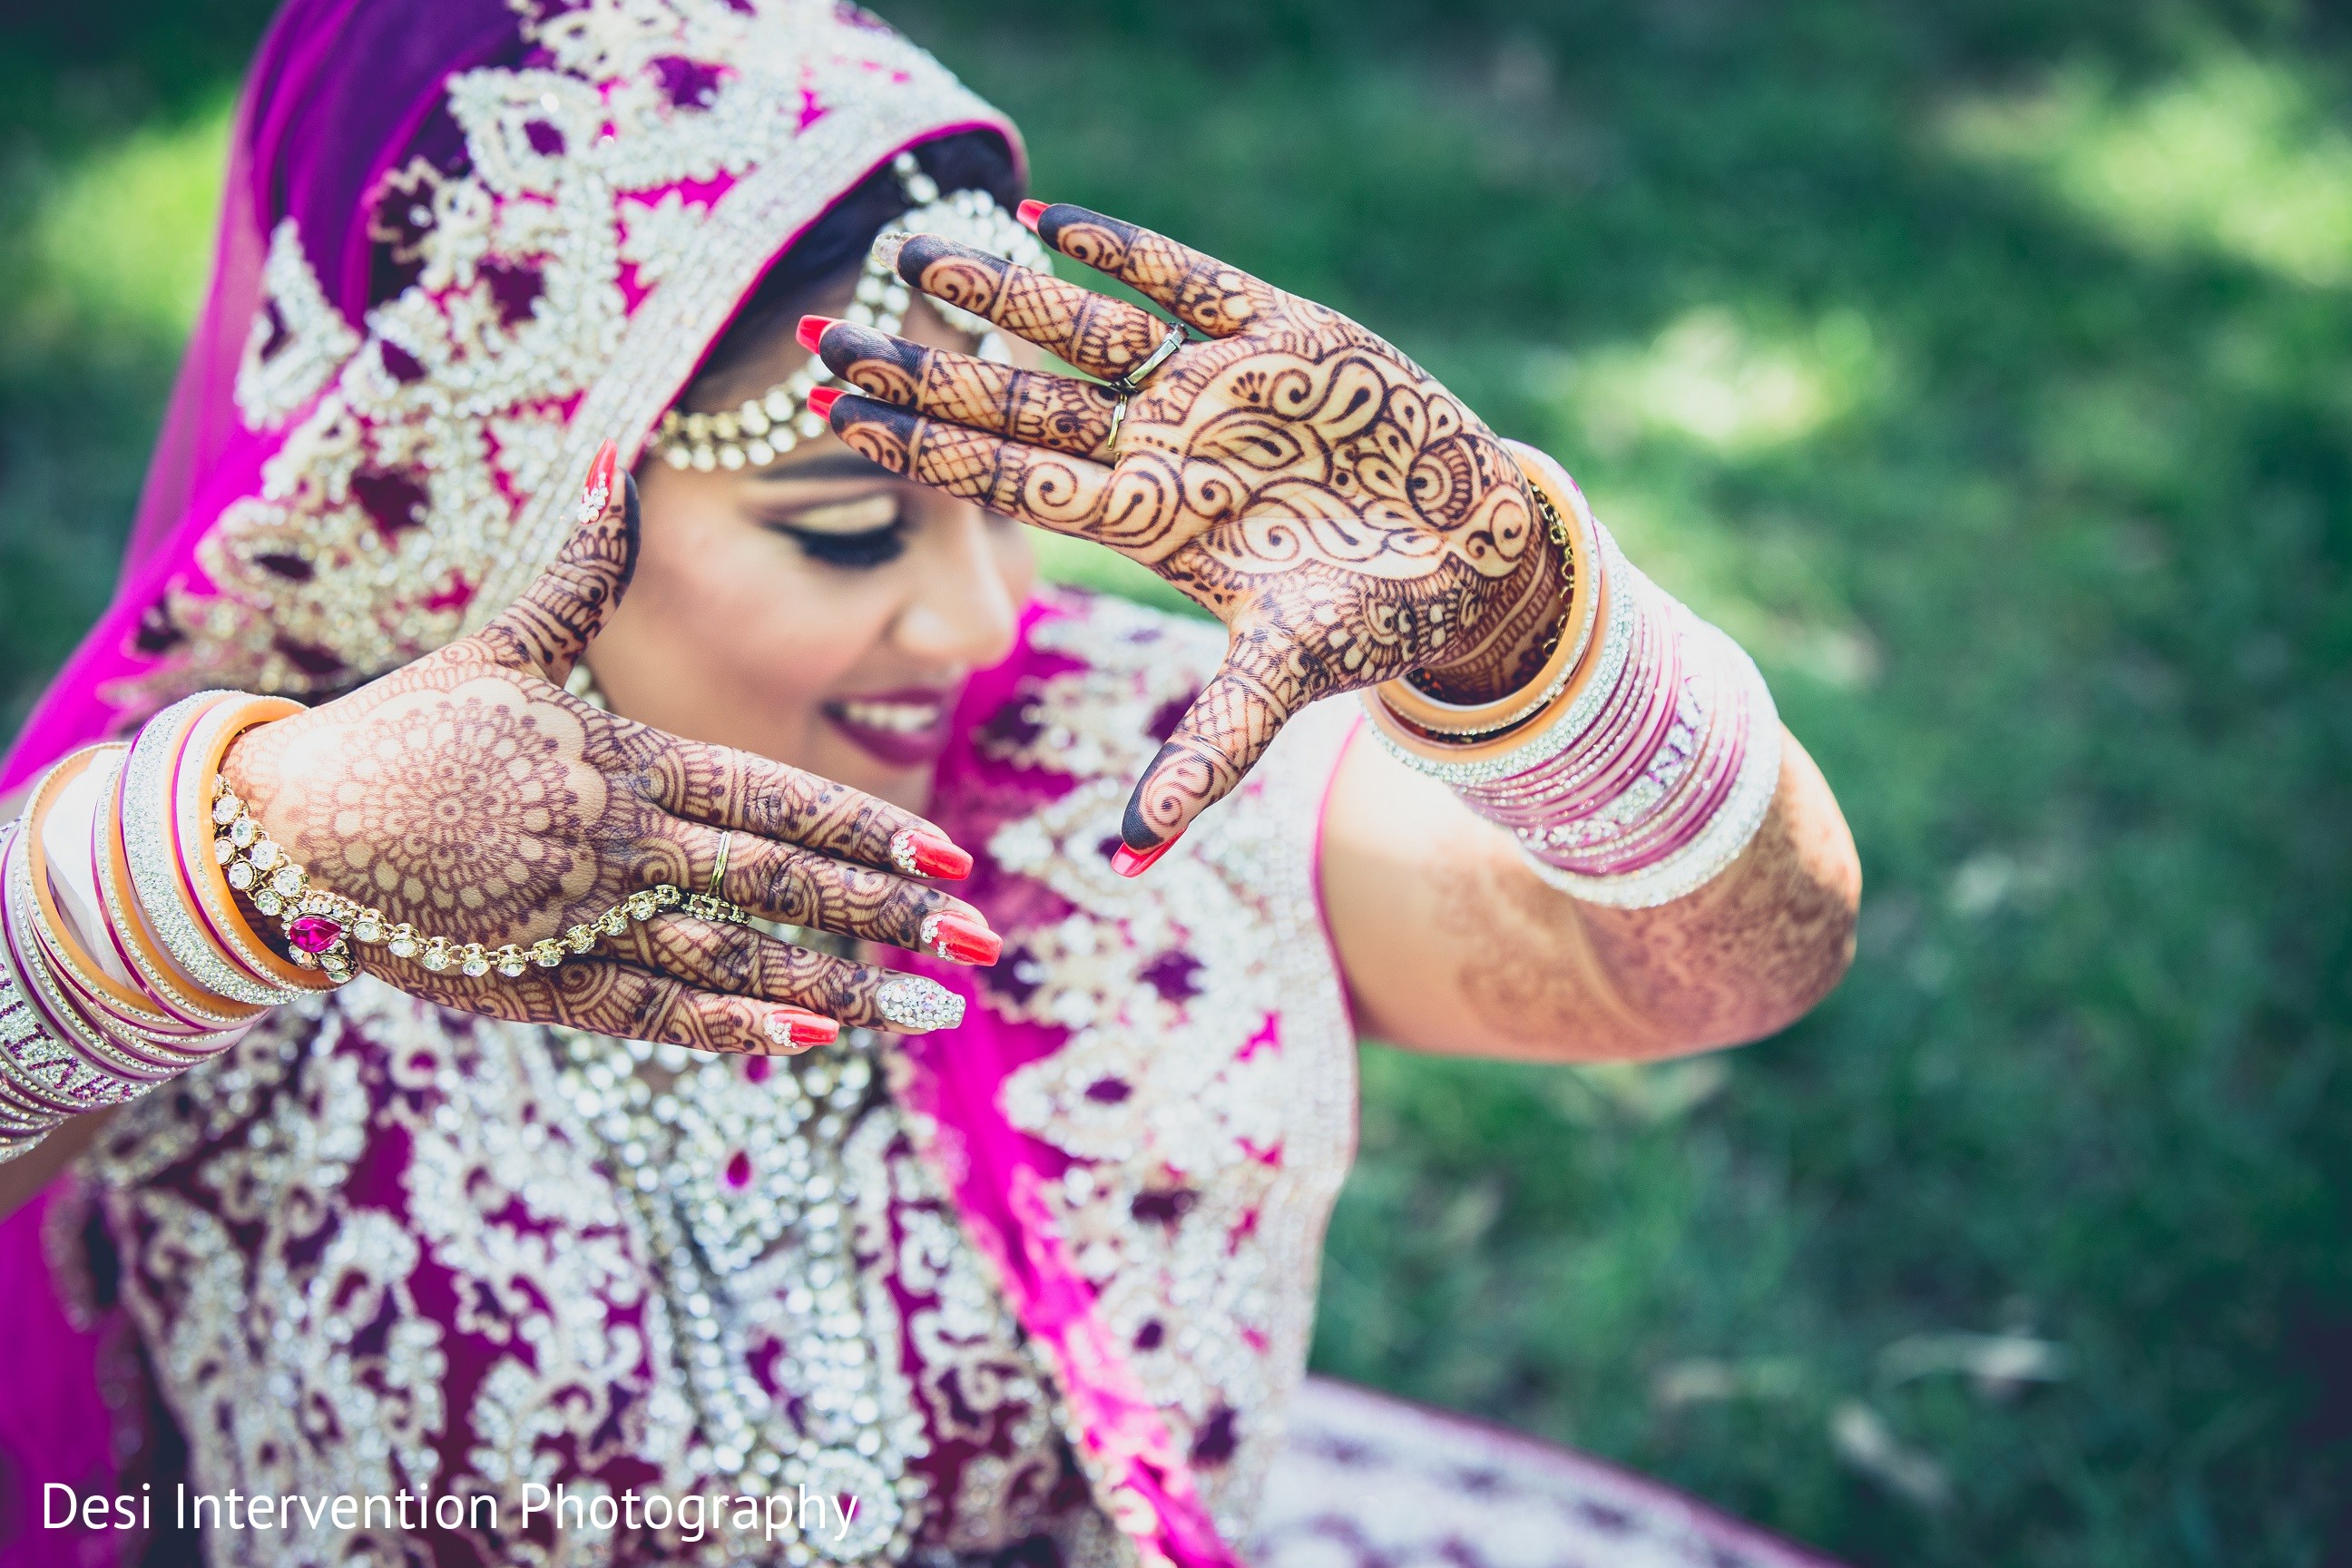 latest new infashion bridal's wedding Day's Image #bridalhairstyle  #bridaljewellery #bri… | Indian bride photography poses, Indian wedding  bride, Bride photos poses